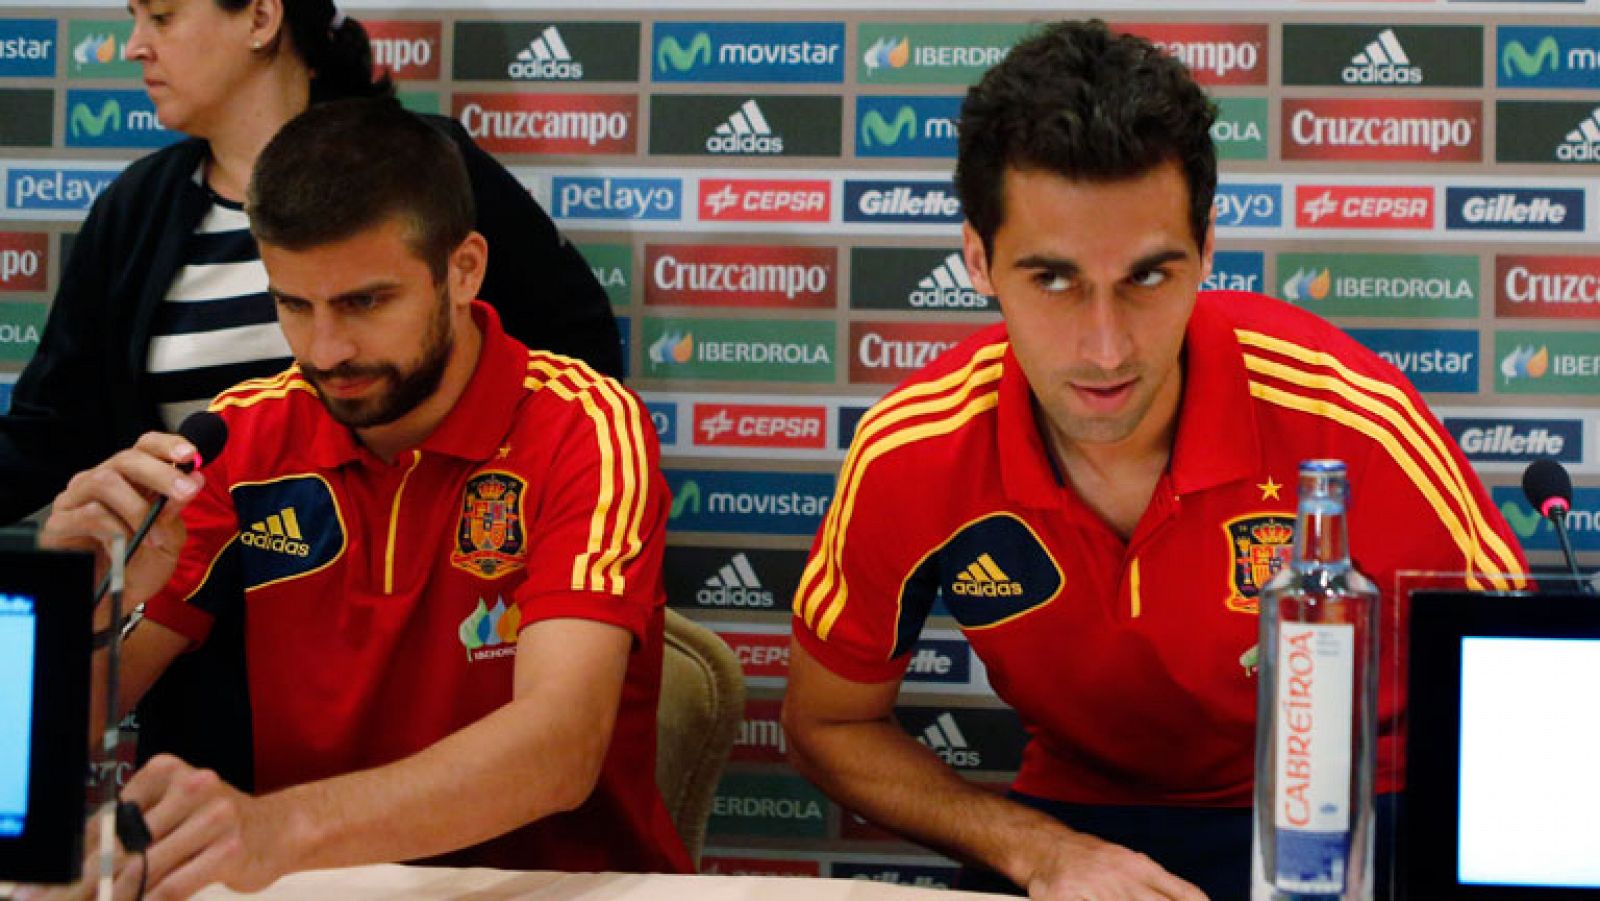 Las palabras de Mourinho han llegado a la selección española, que el martes juega en Nueva York su segundo partido de preparación de la copa confederaciones. Otro asunto que está en el ambiente del equipo son las dudas sobre las relaciones entre Casi